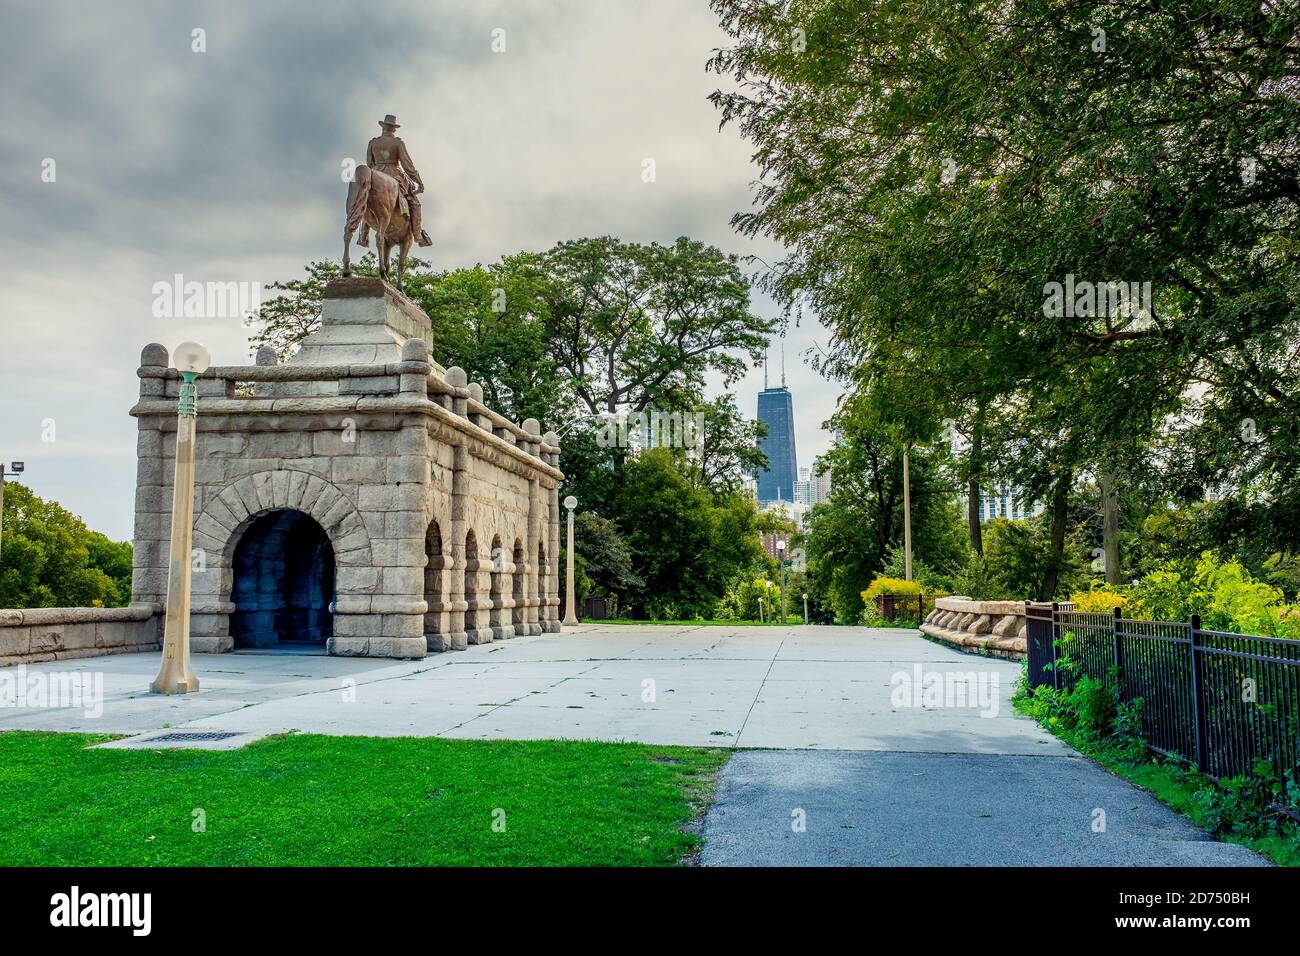 El monumento a Ulysses Grant en Lincoln Park, Chicago - instalado en 1891 por el artista Louis T Rebisso. Foto de stock